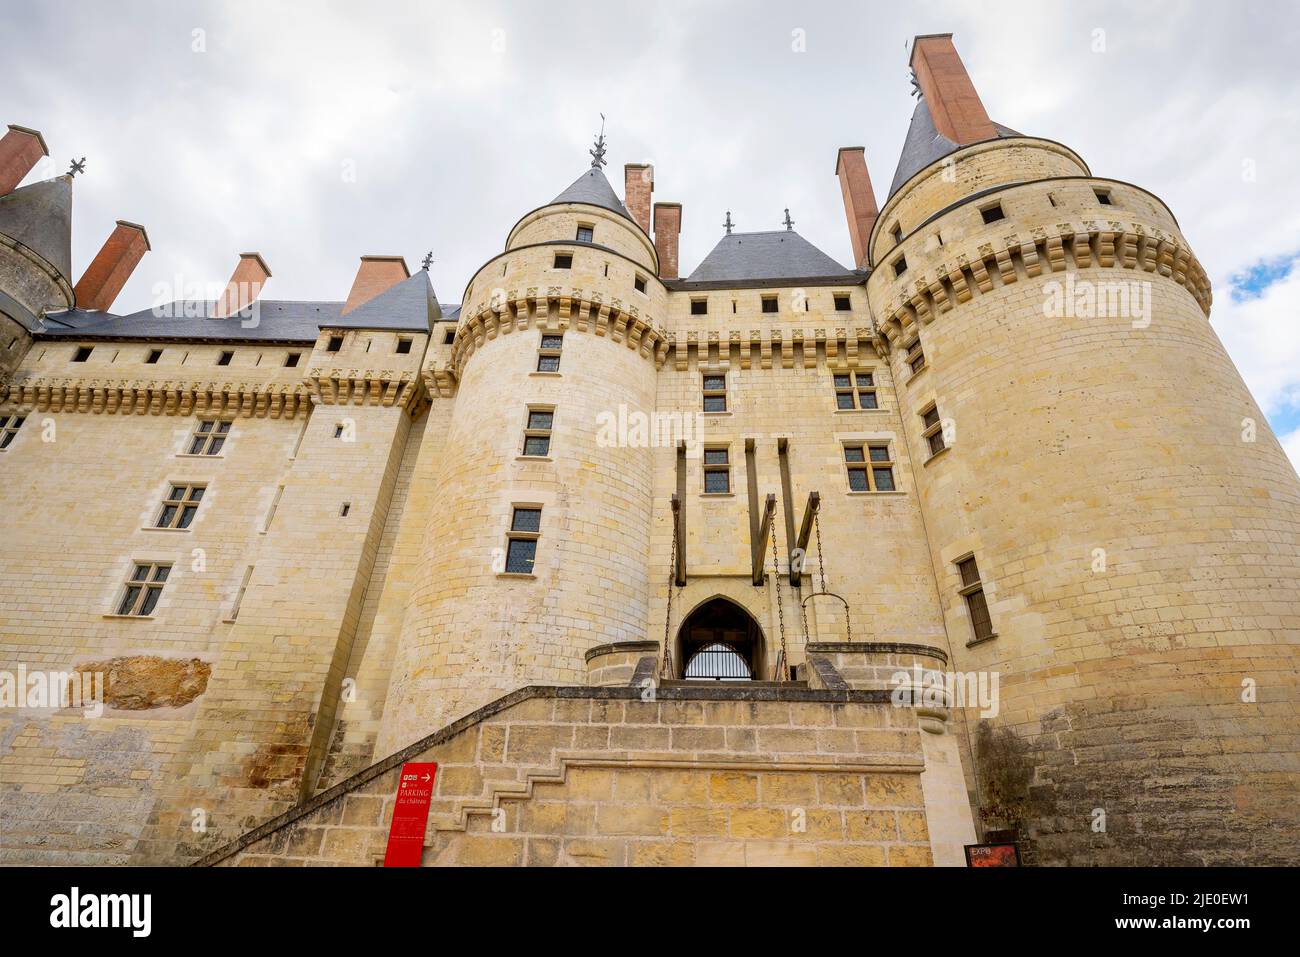 Château de Langeais, 15th-century fashionably elegant  Gothic castle. Indre-et-Loire, France. Stock Photo